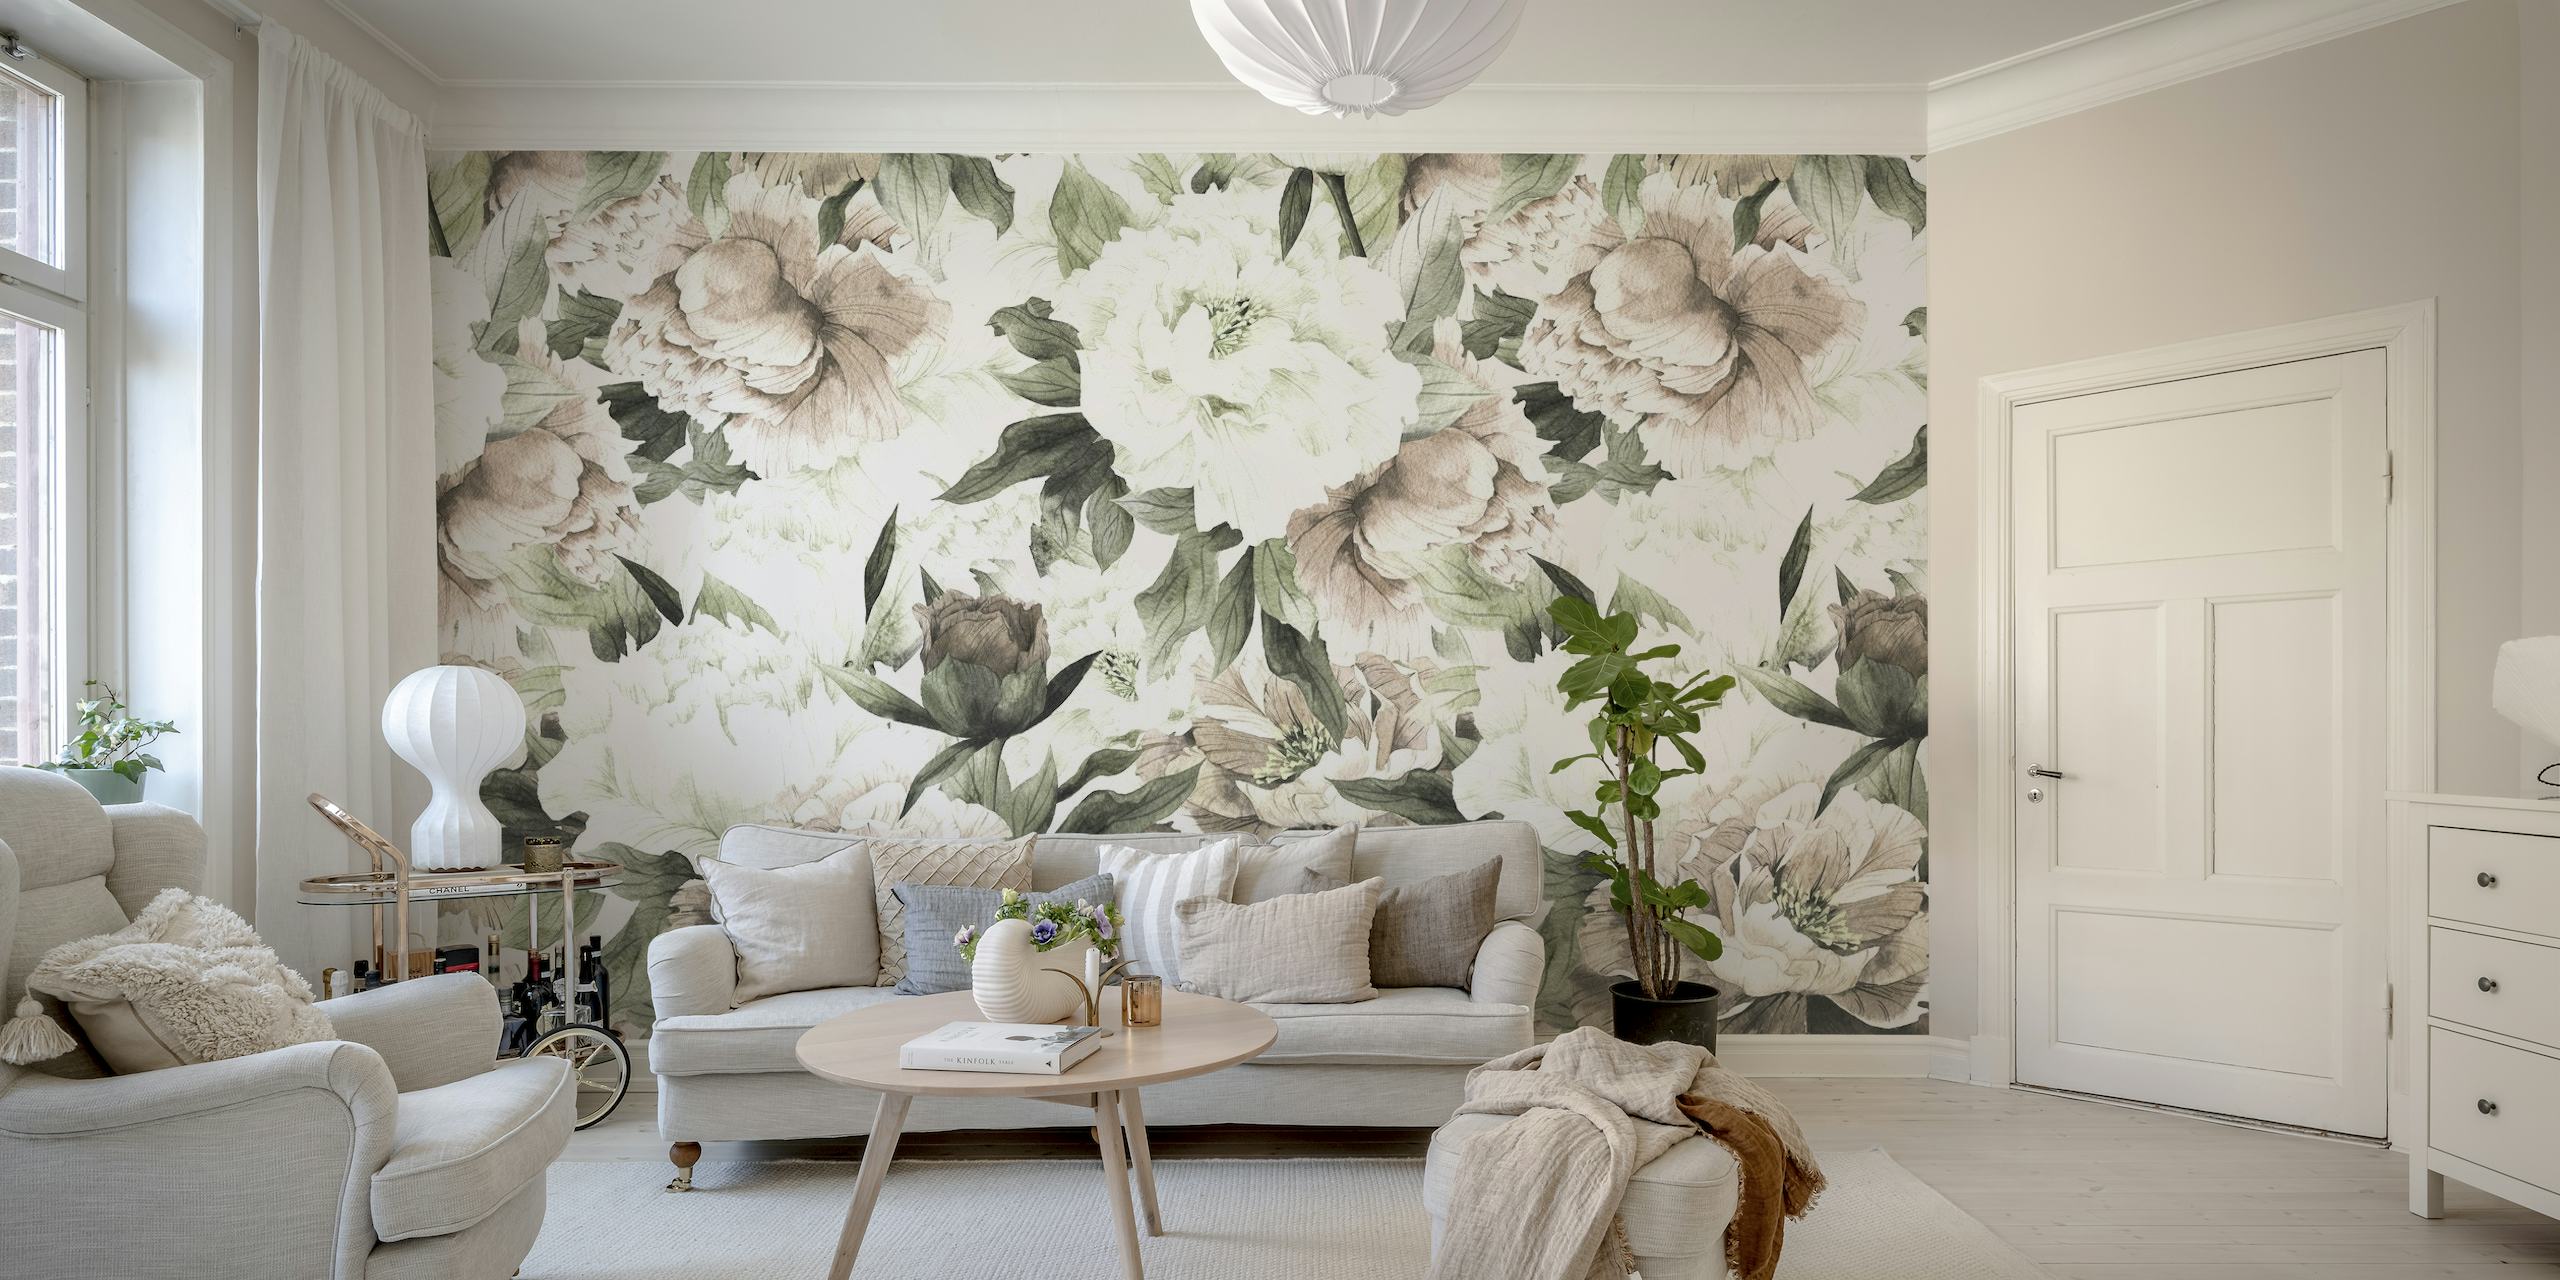 Elegant blush floral and antique floral wallpaper design